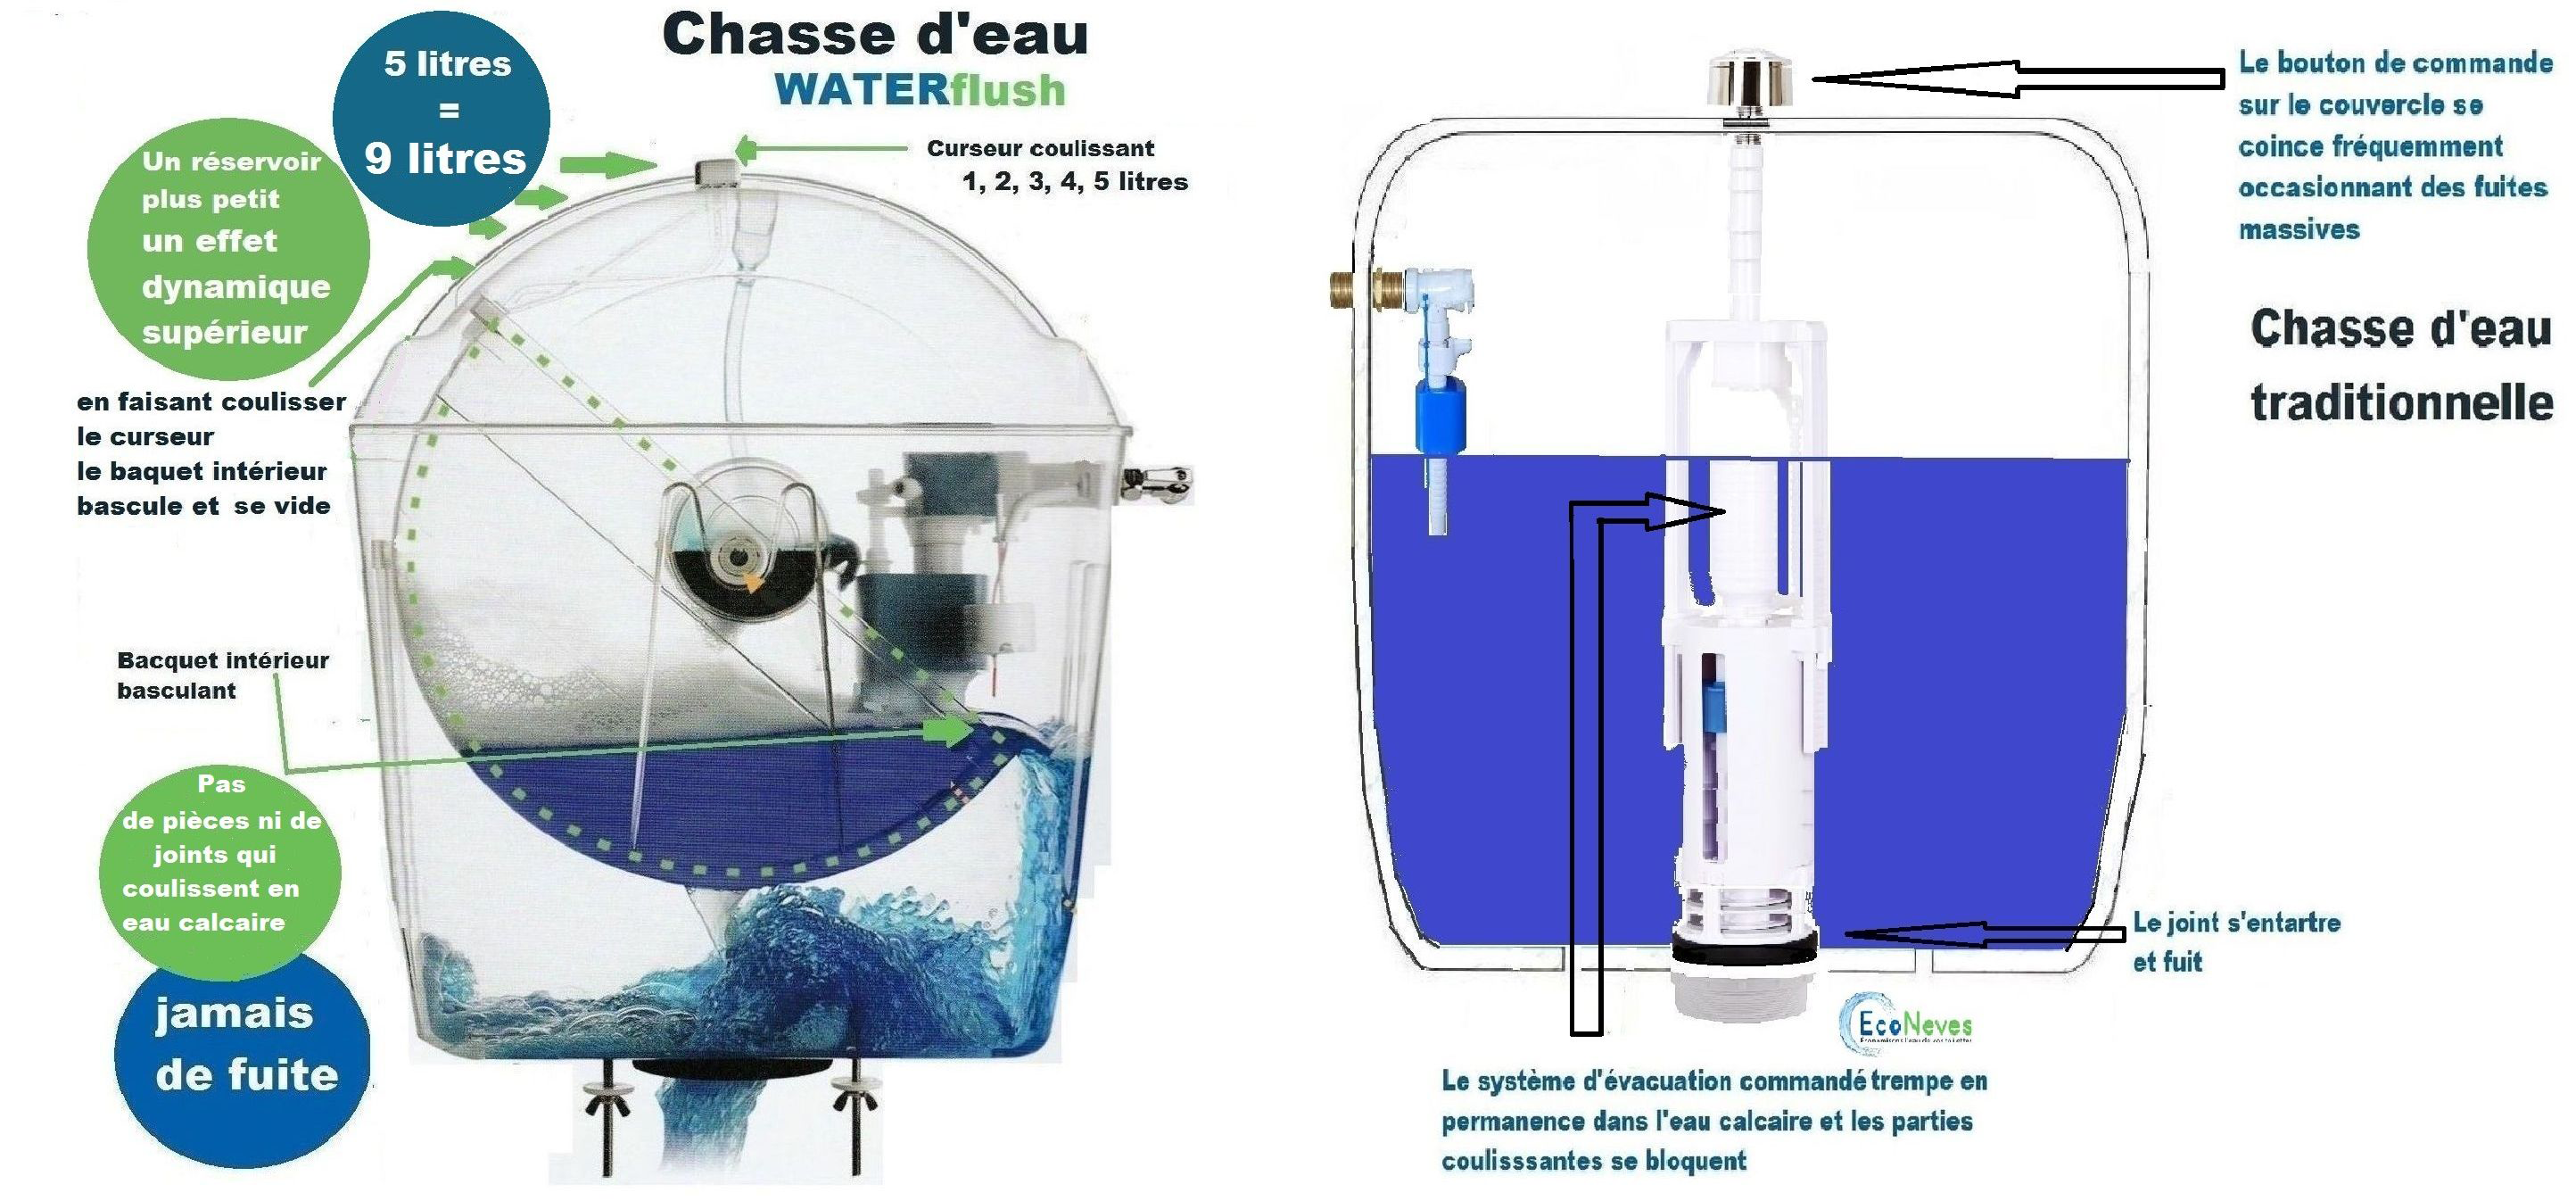 Comparaison entre un réservoir WaterFlush et un réservoir traditionnel